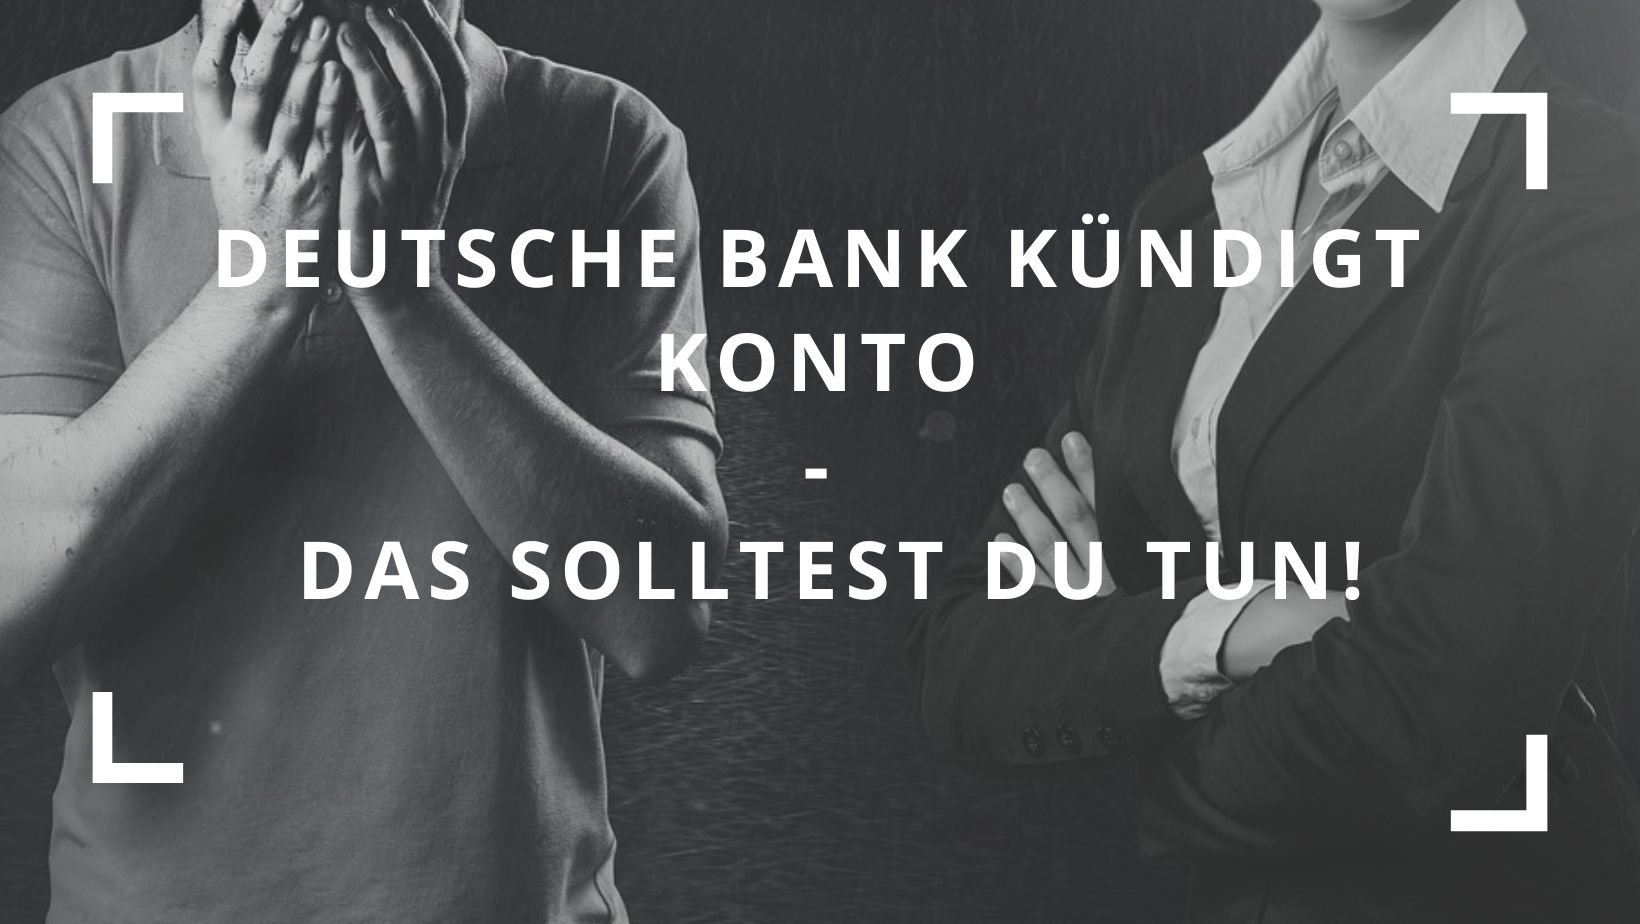 Titelbild zum Beitrag: "Deutsche Bank kündigt Konto Das solltest du tun"